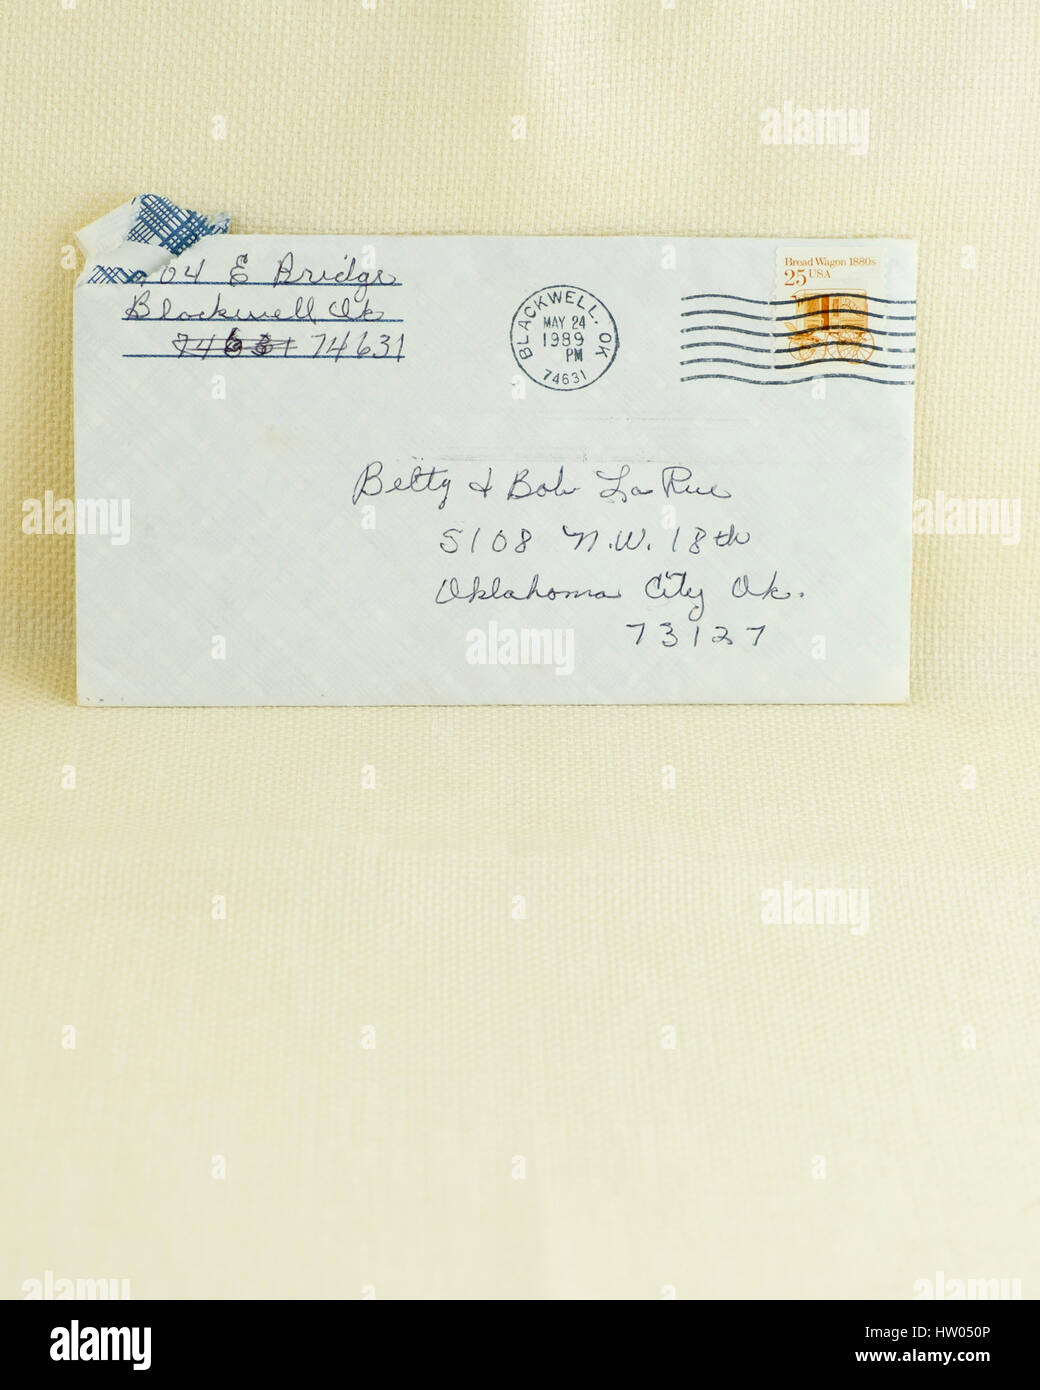 Vecchio vintage la lettera in una busta a partire dalla fine del 1989, da una madre a una figlia. Oklahoma, Stati Uniti d'America. US,Stati Uniti,U.S.A., Stati Uniti Foto Stock